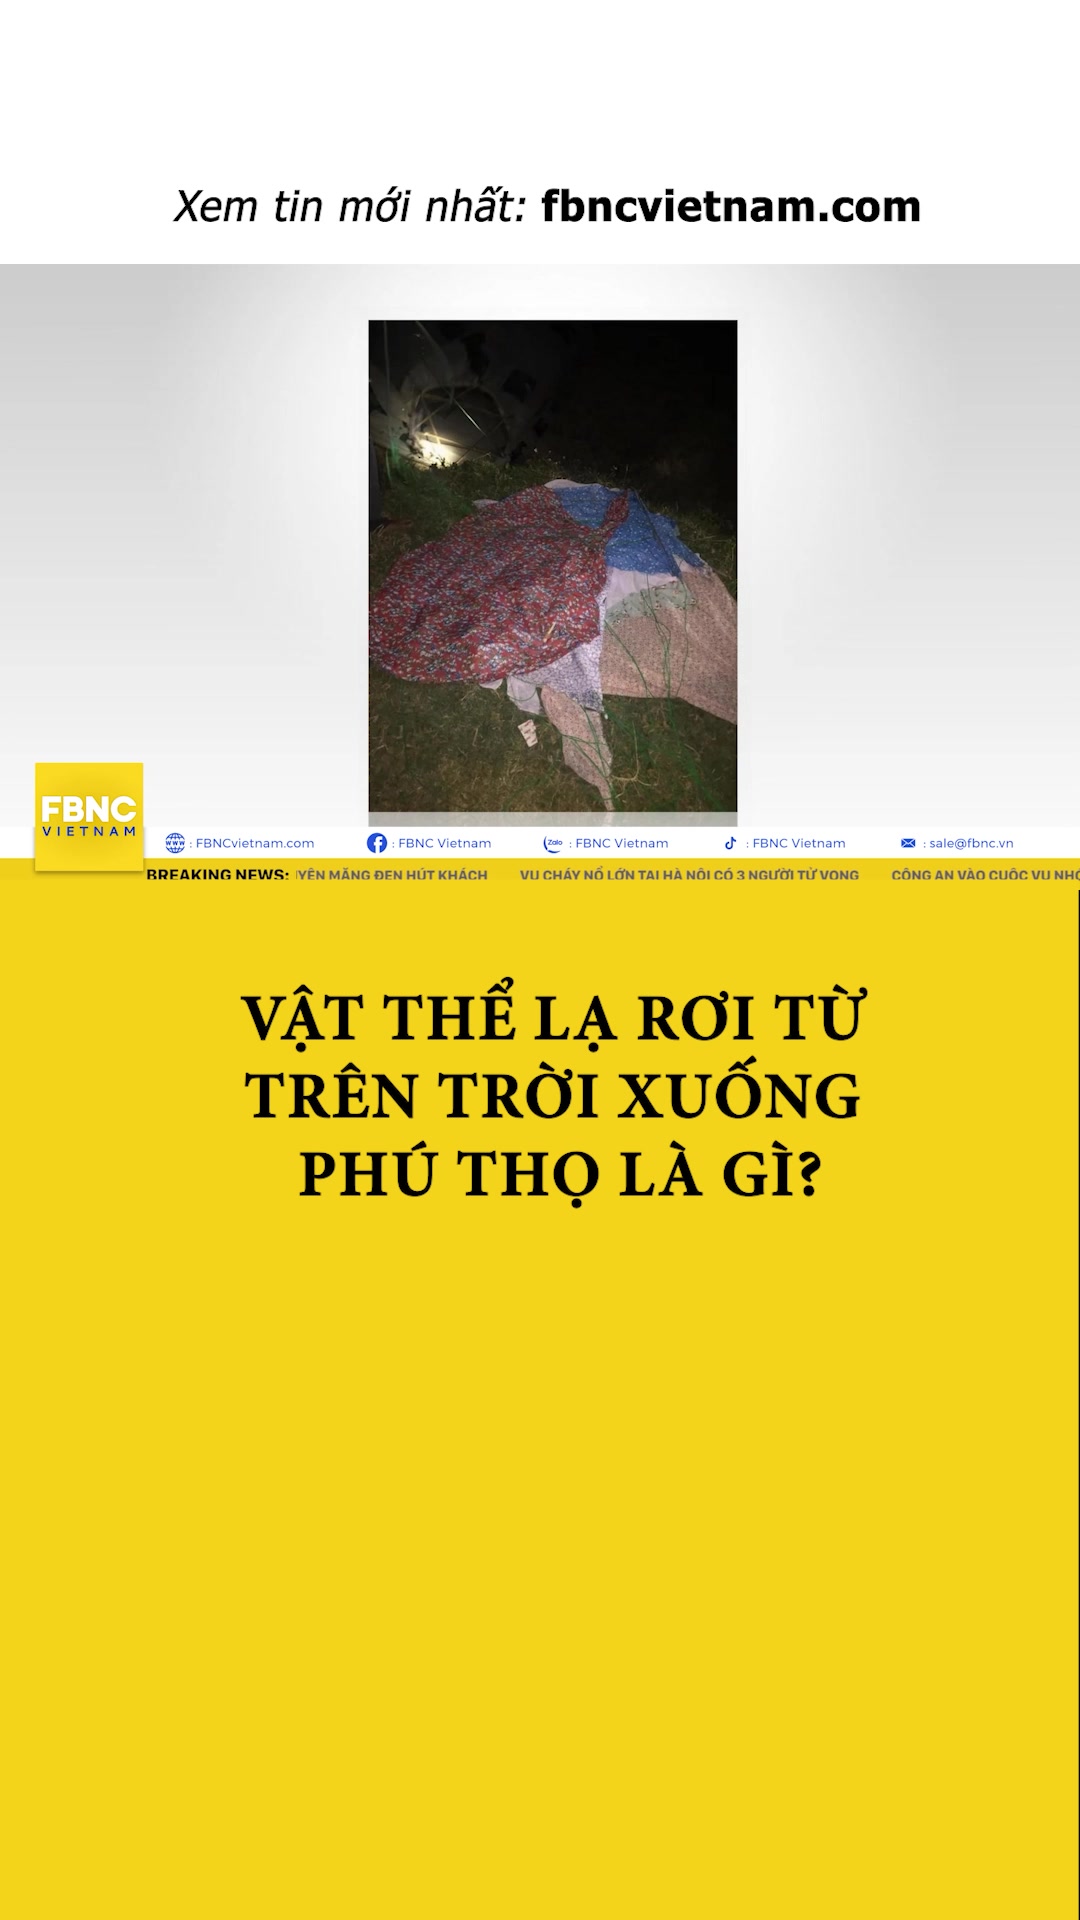 @FBNC Vietnam